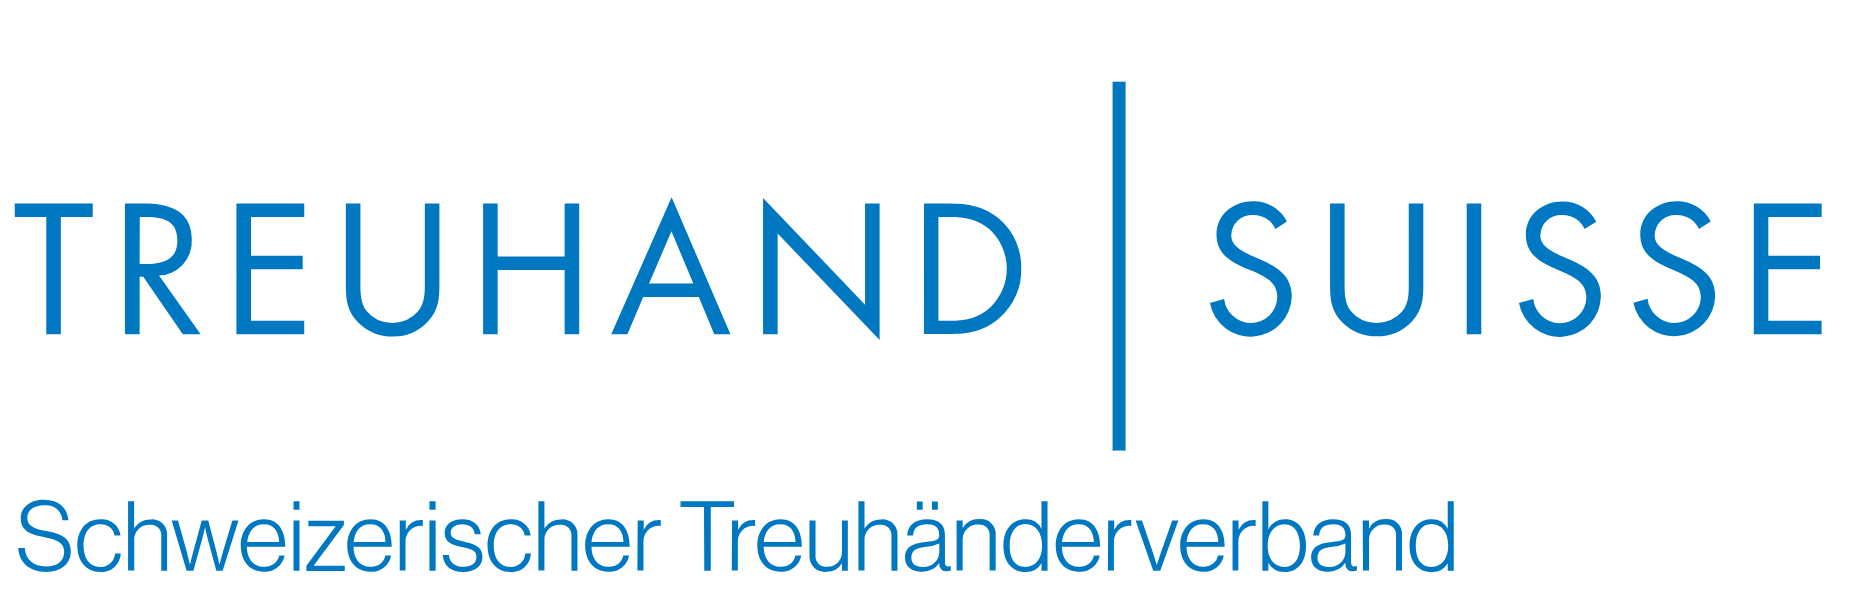 Digital Treuhänder ist Mitglied bei Treuhand Suisse